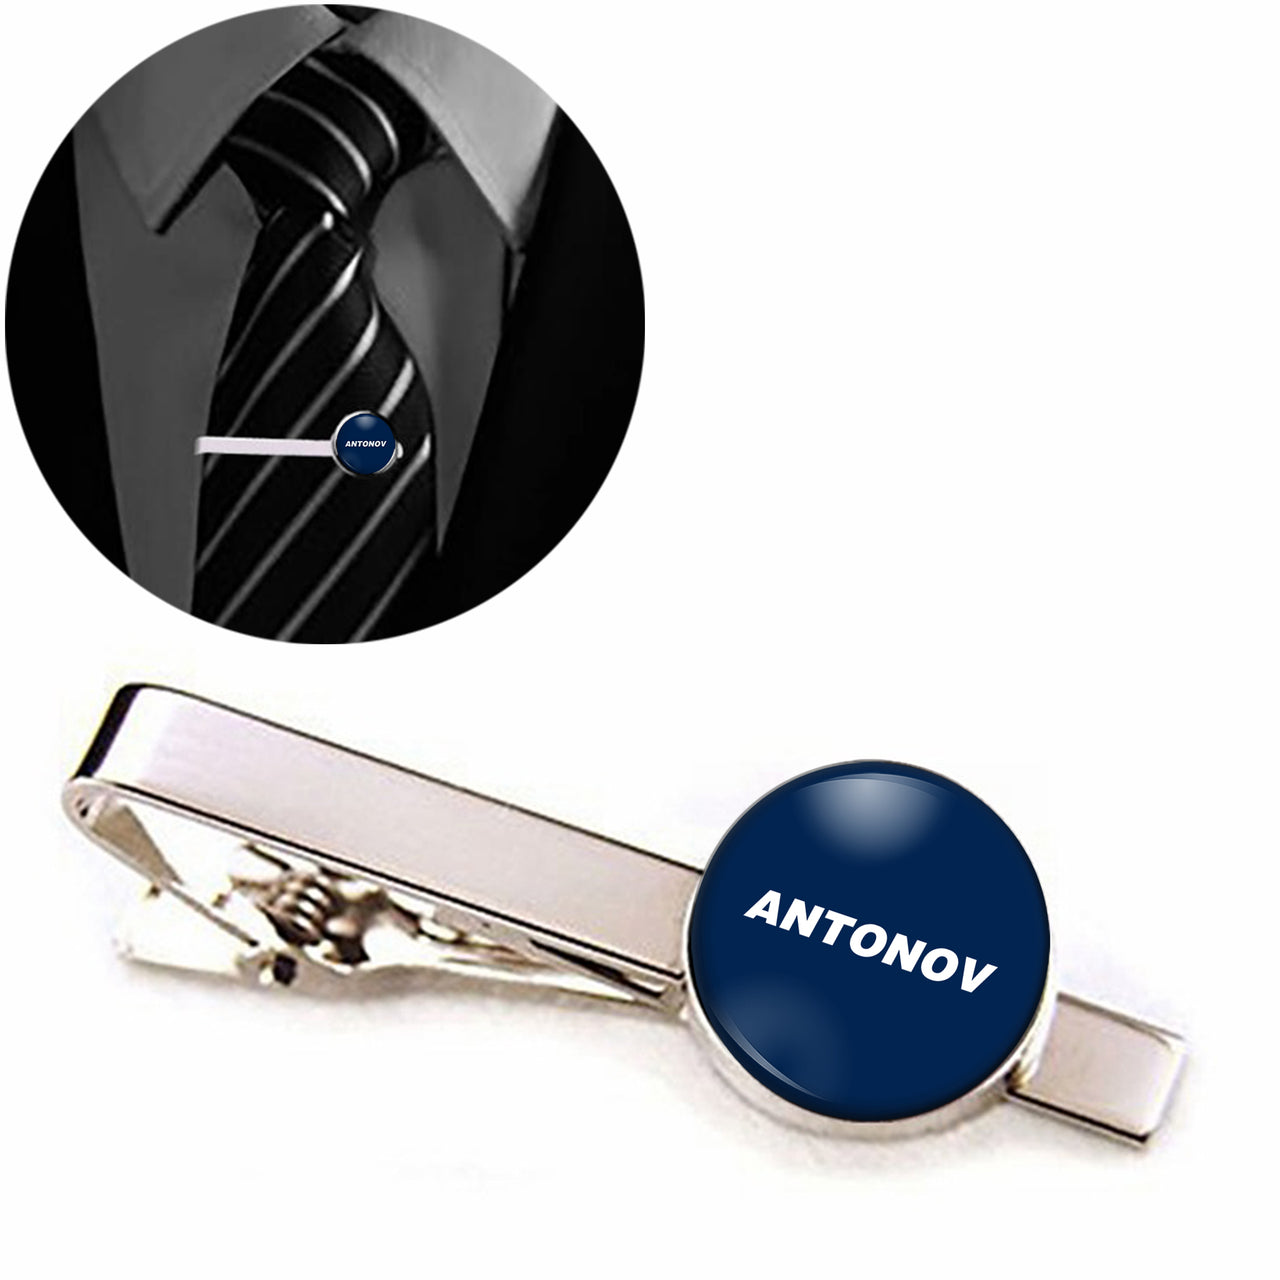 Antonov & Text Designed Tie Clips